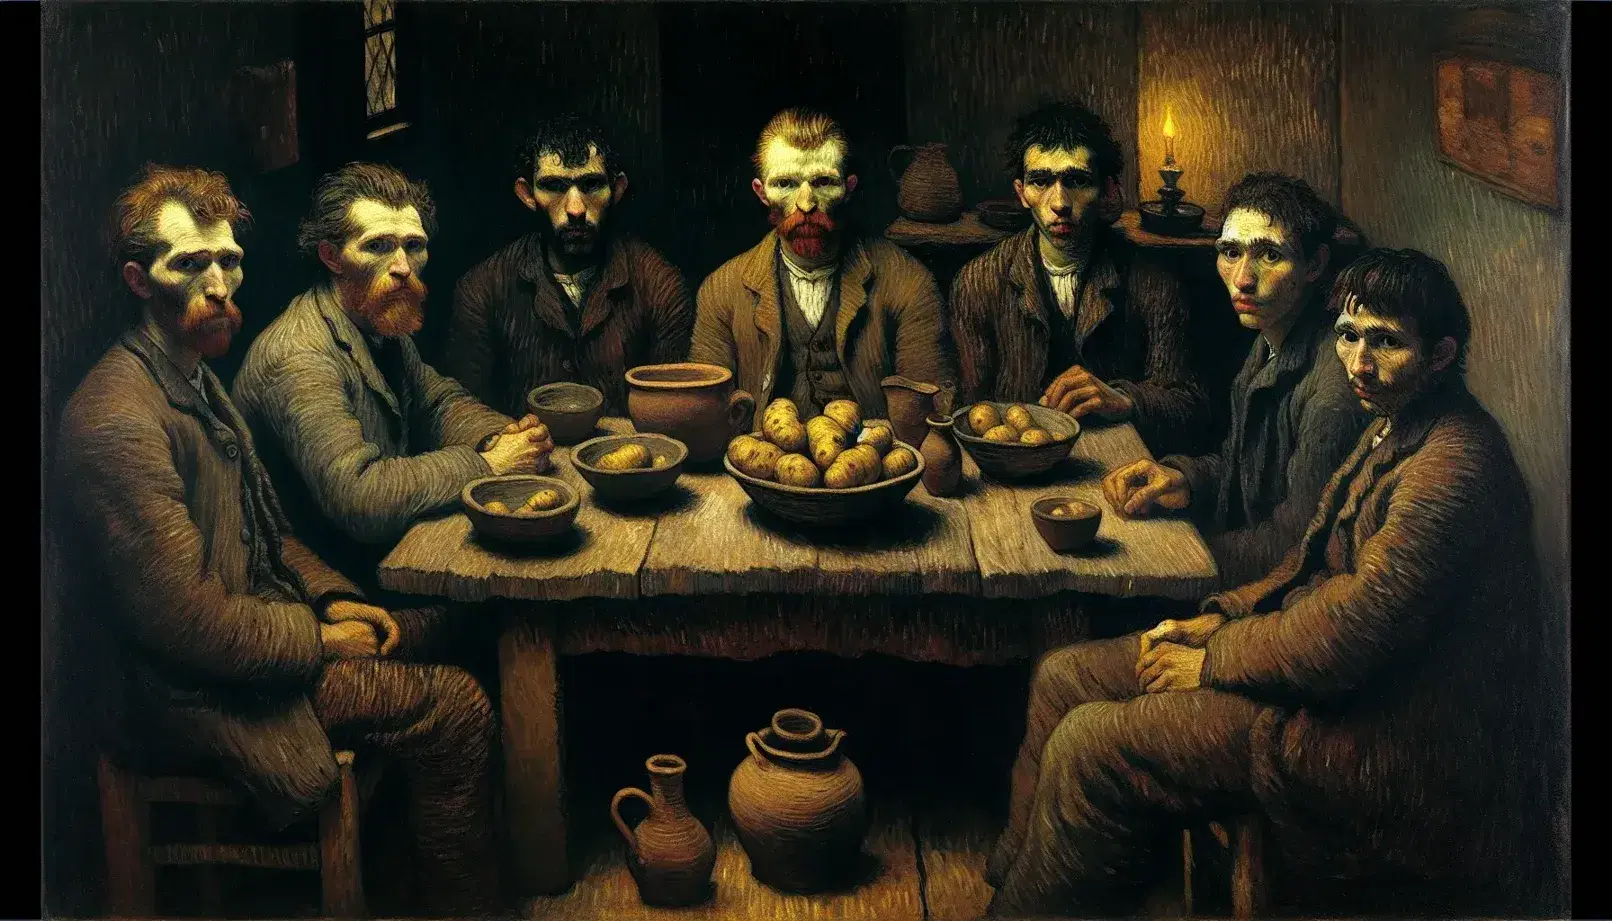 Riproduzione del dipinto 'I Mangiatori di Patate' di Van Gogh con cinque figure attorno a un tavolo scuro in una stanza buia.